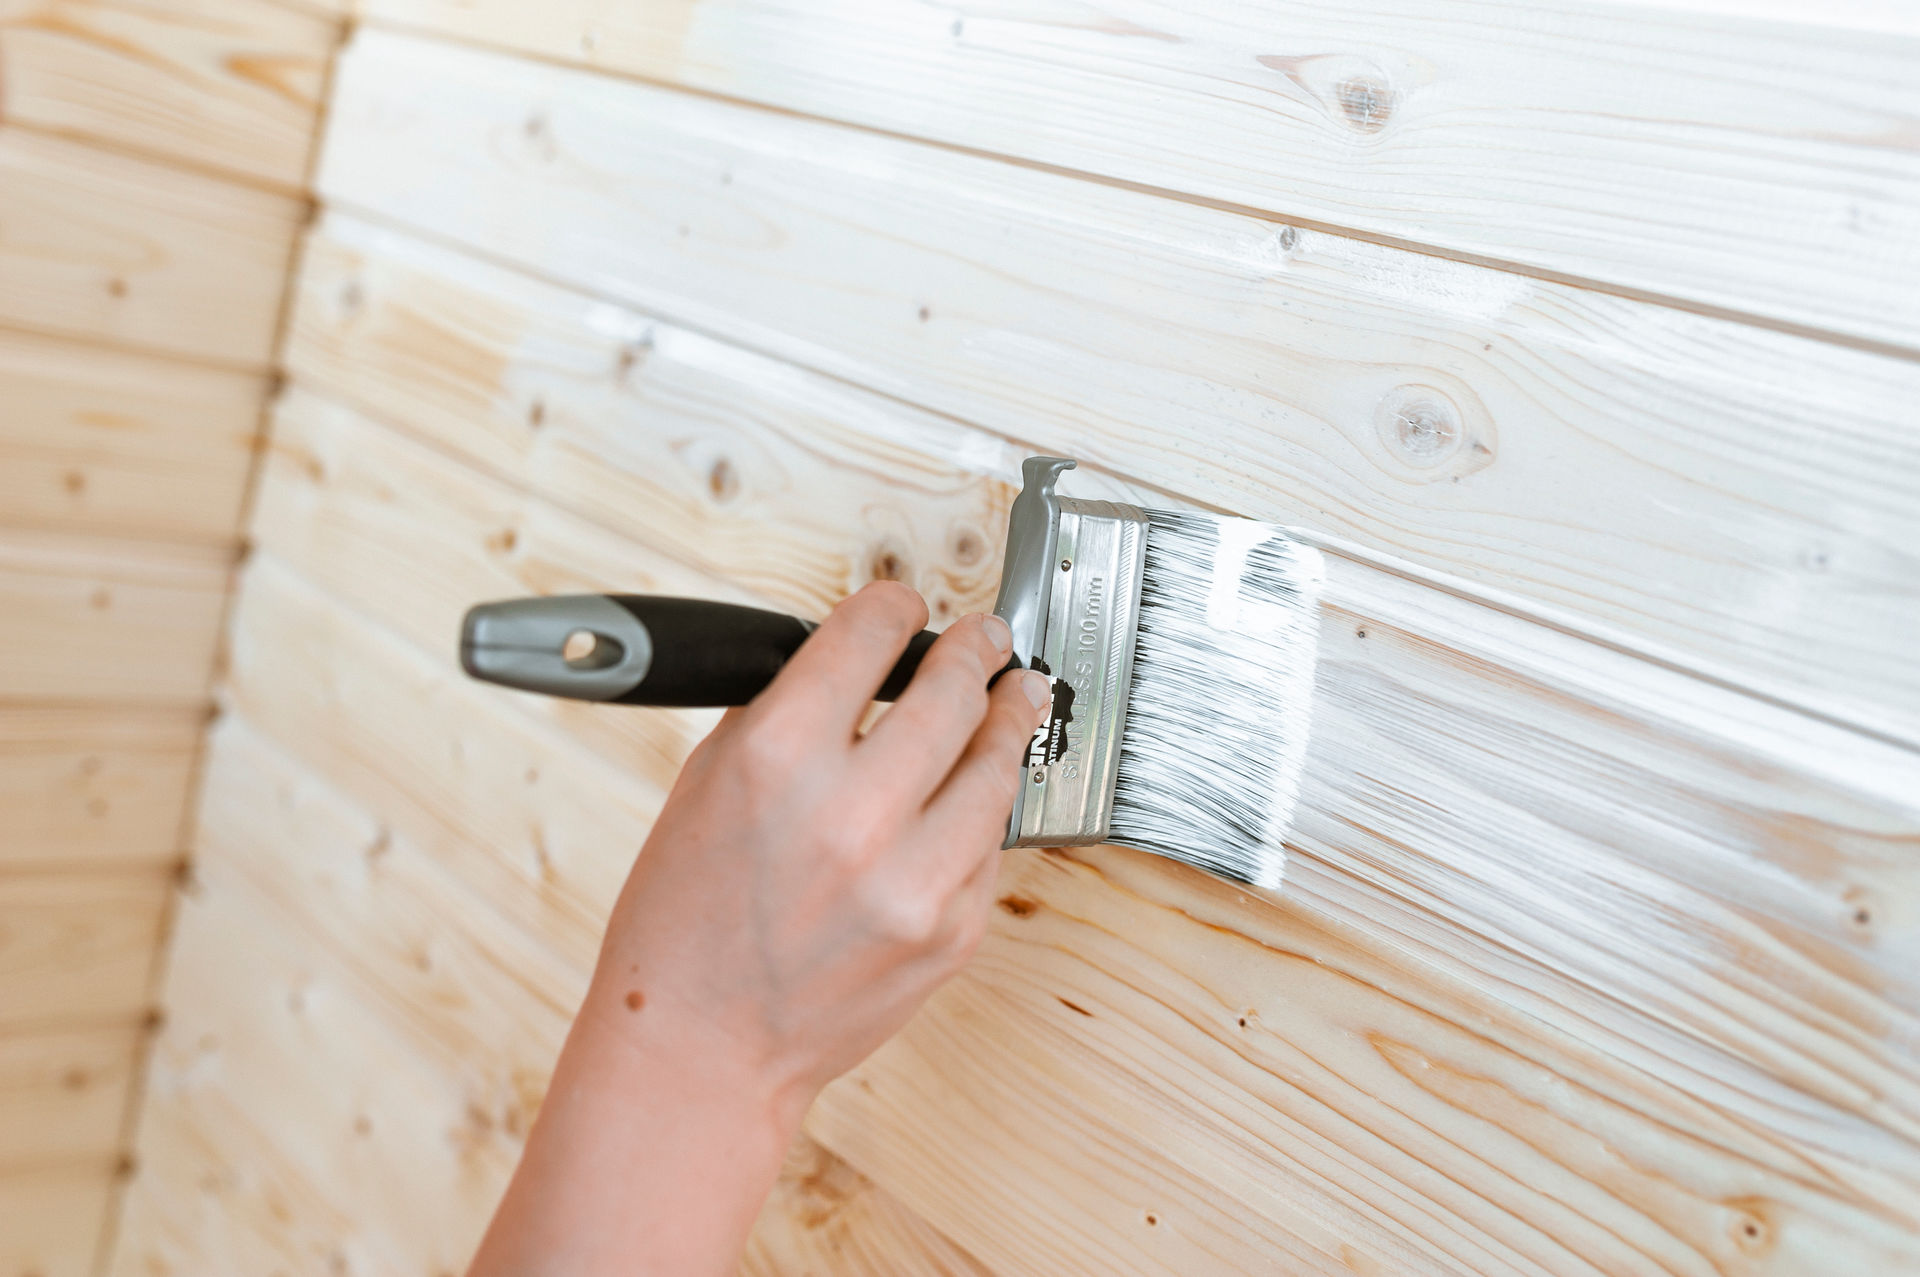 Pared de Paneles de Madera - Revise las mejores ideas sobre cómo pintar los paneles de madera